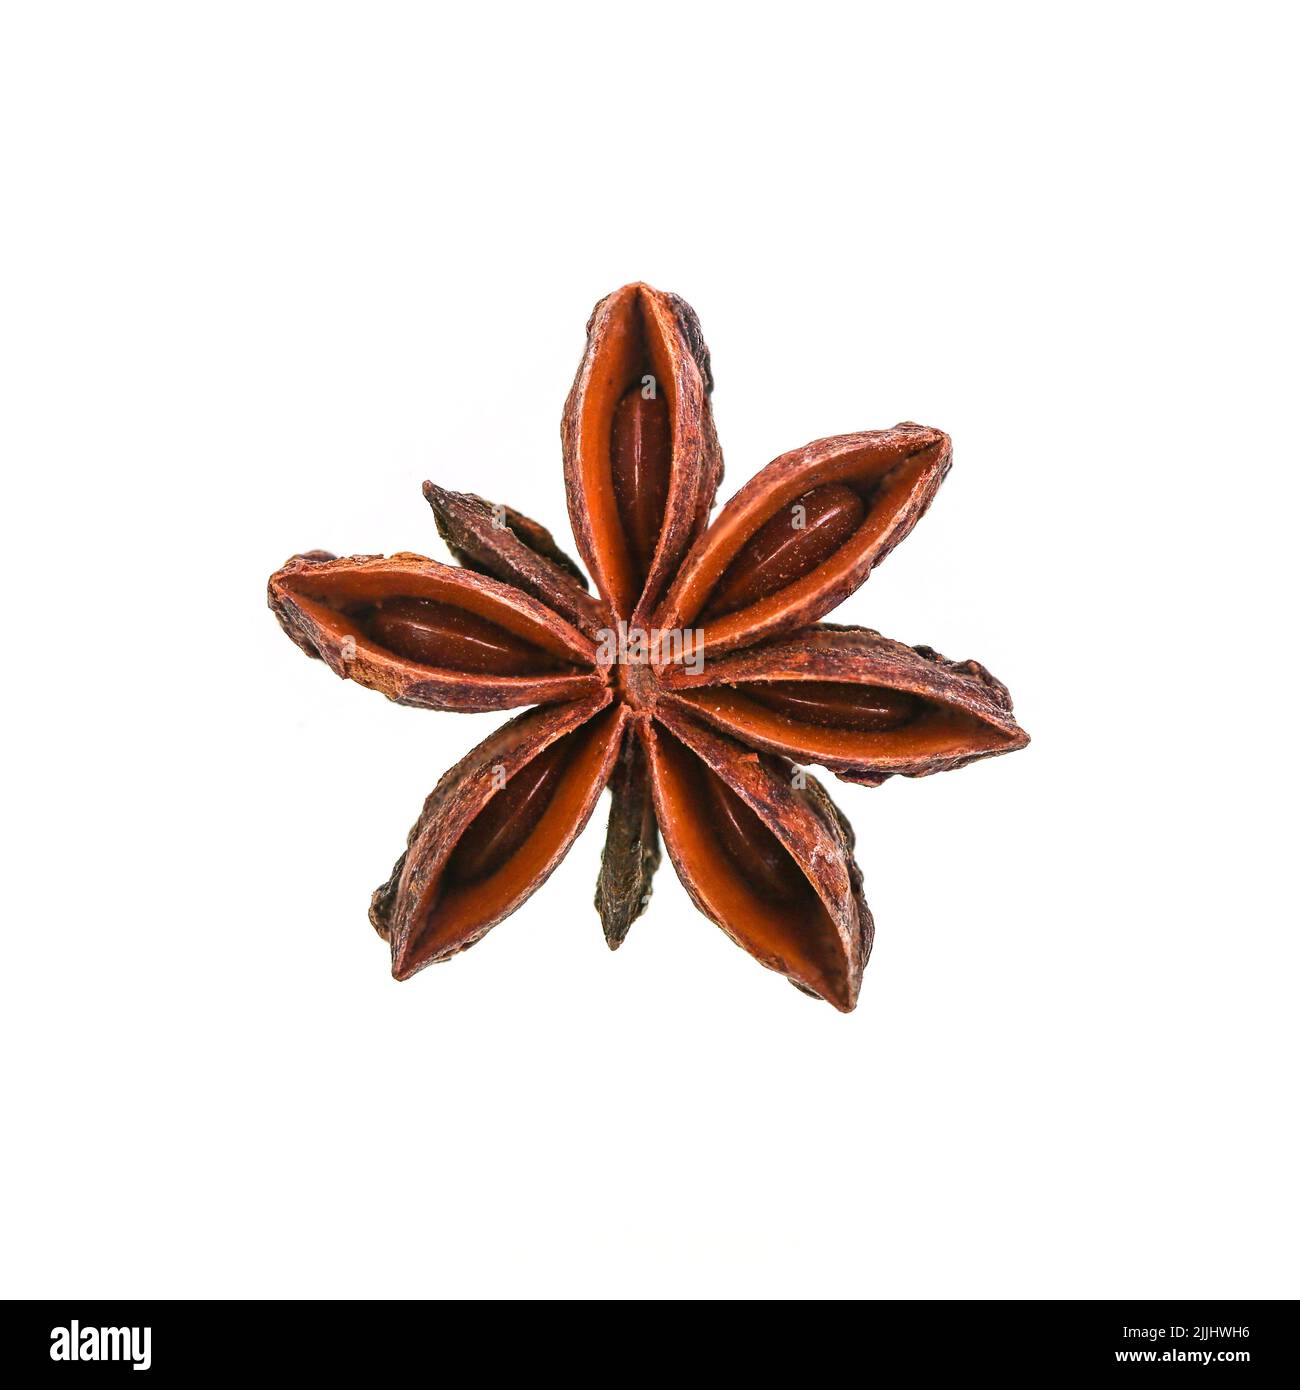 El anís estrellado es el fruto de una planta llamada Ilicium verum, una planta perenne originaria de Vietnam y del suroeste de China Foto de stock